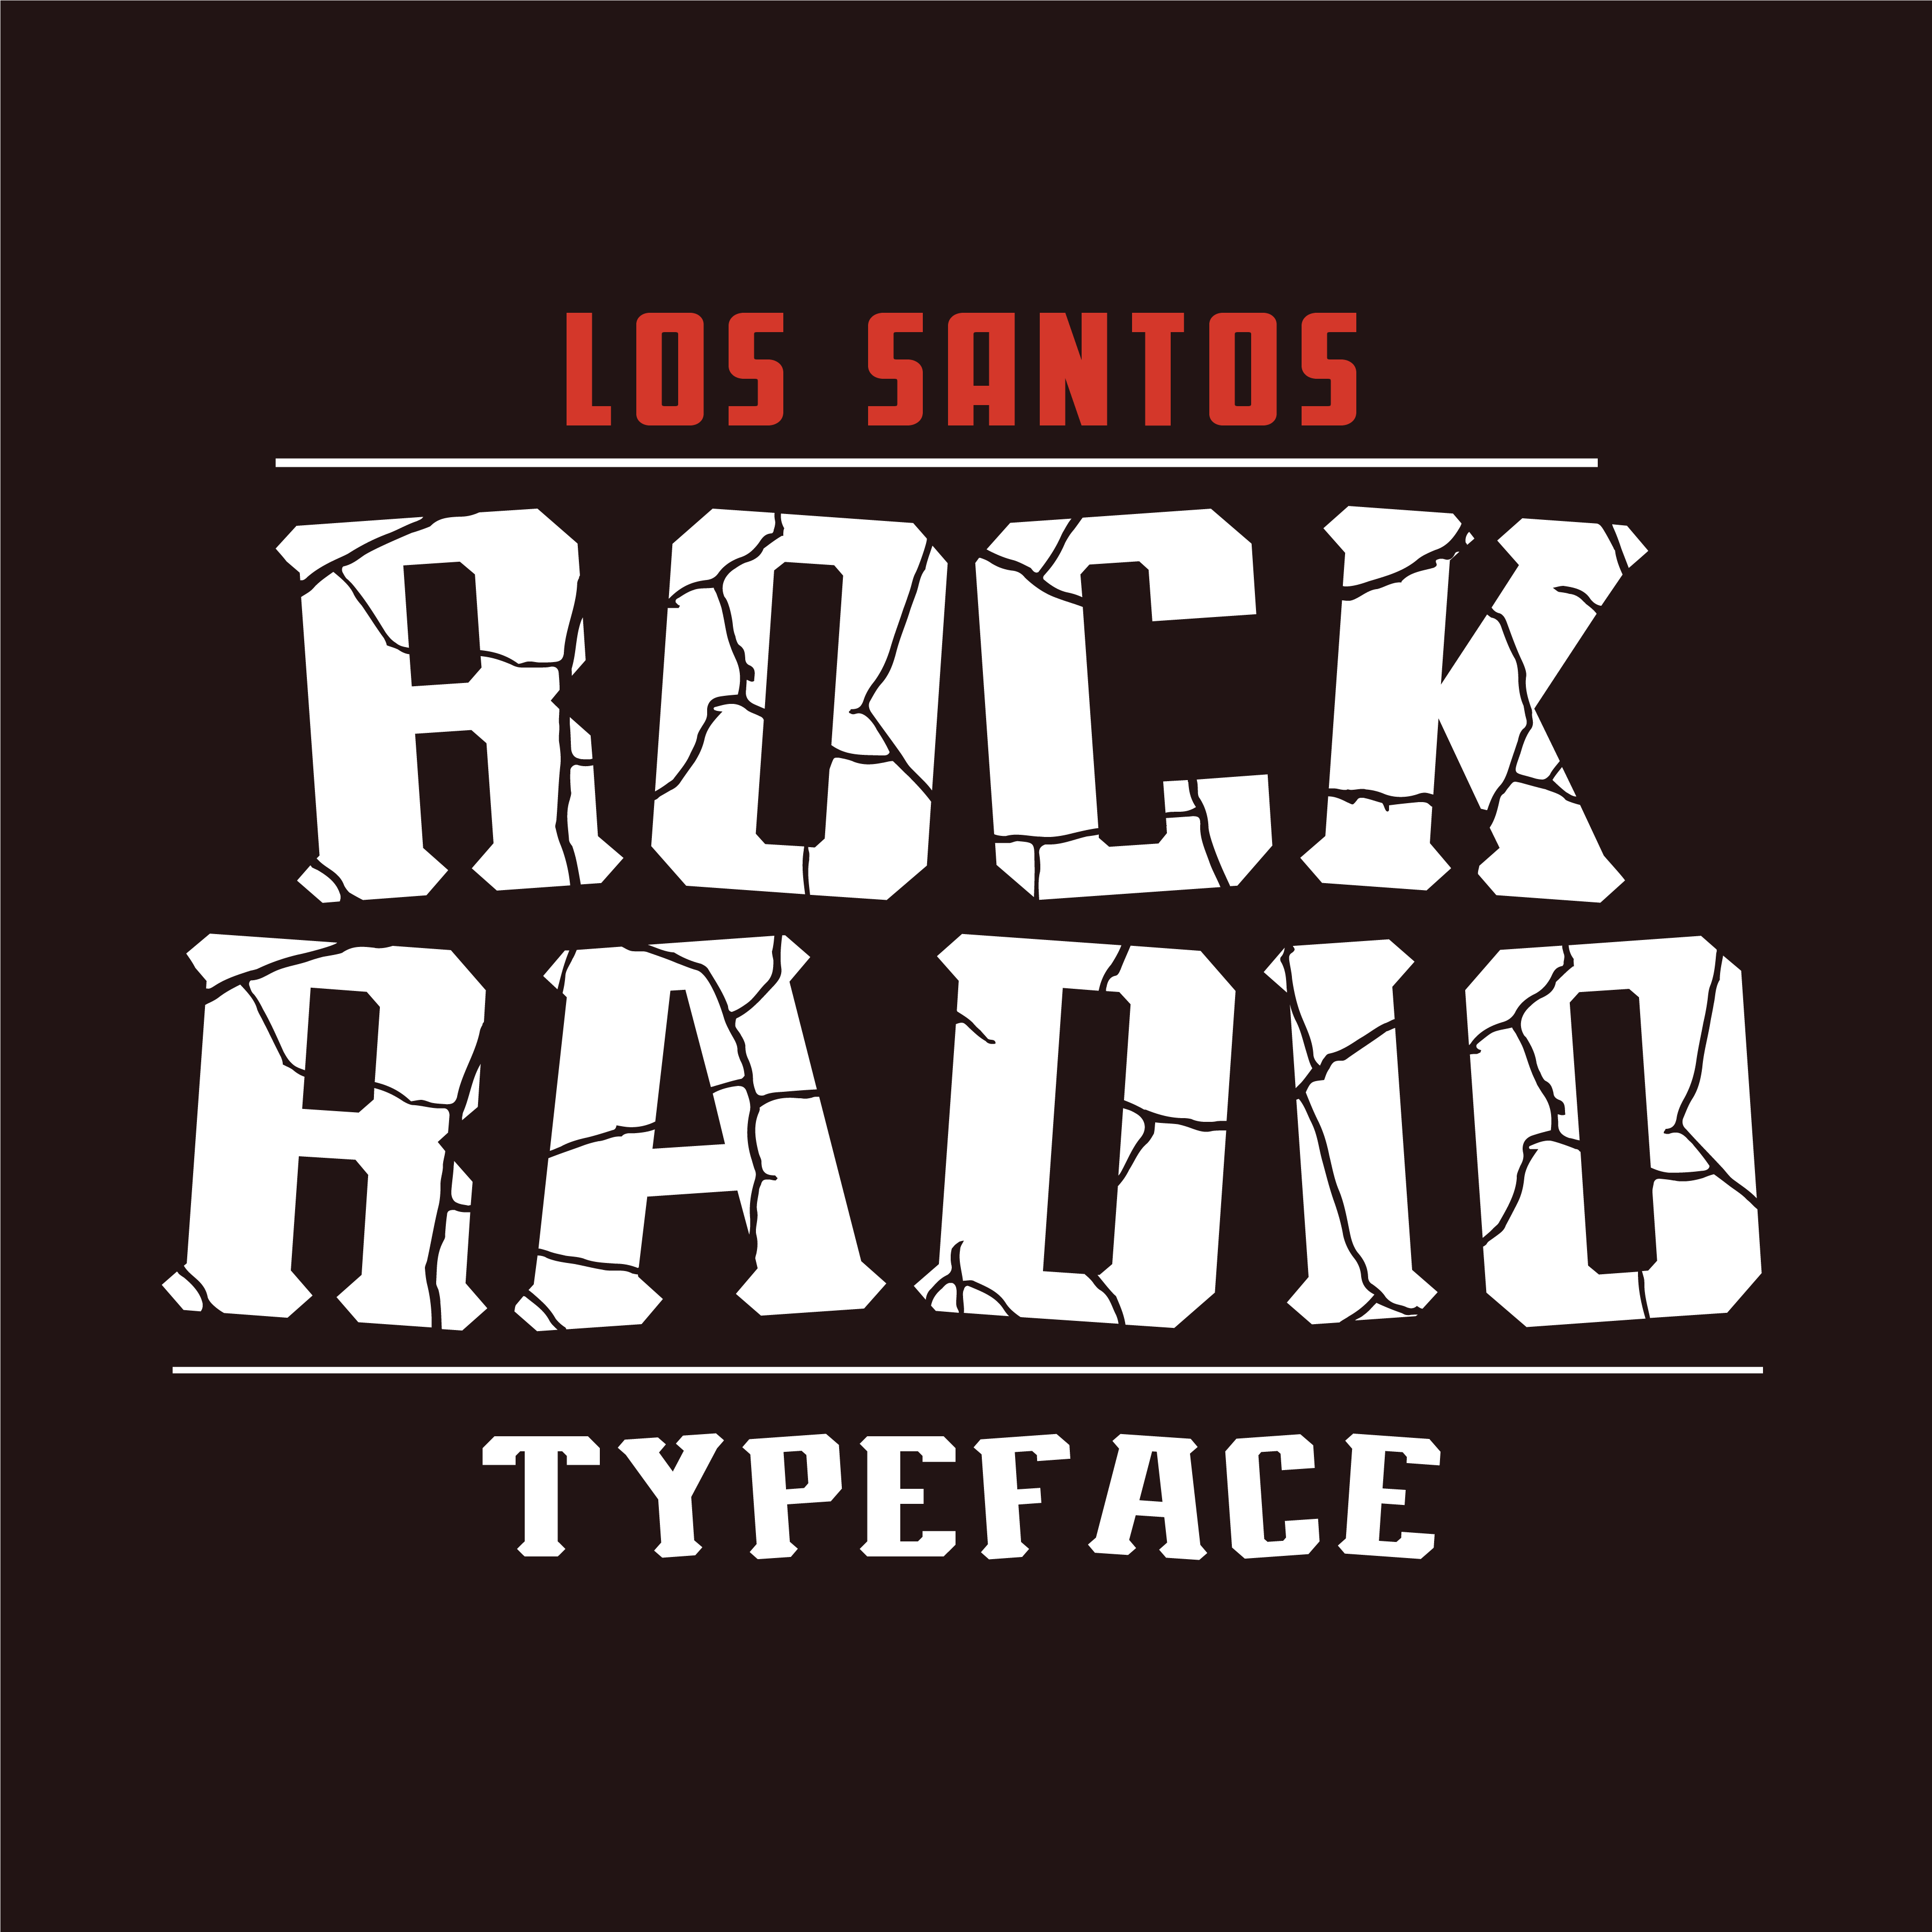 Los Santos Rock Radio (@LosSantosRock) / X